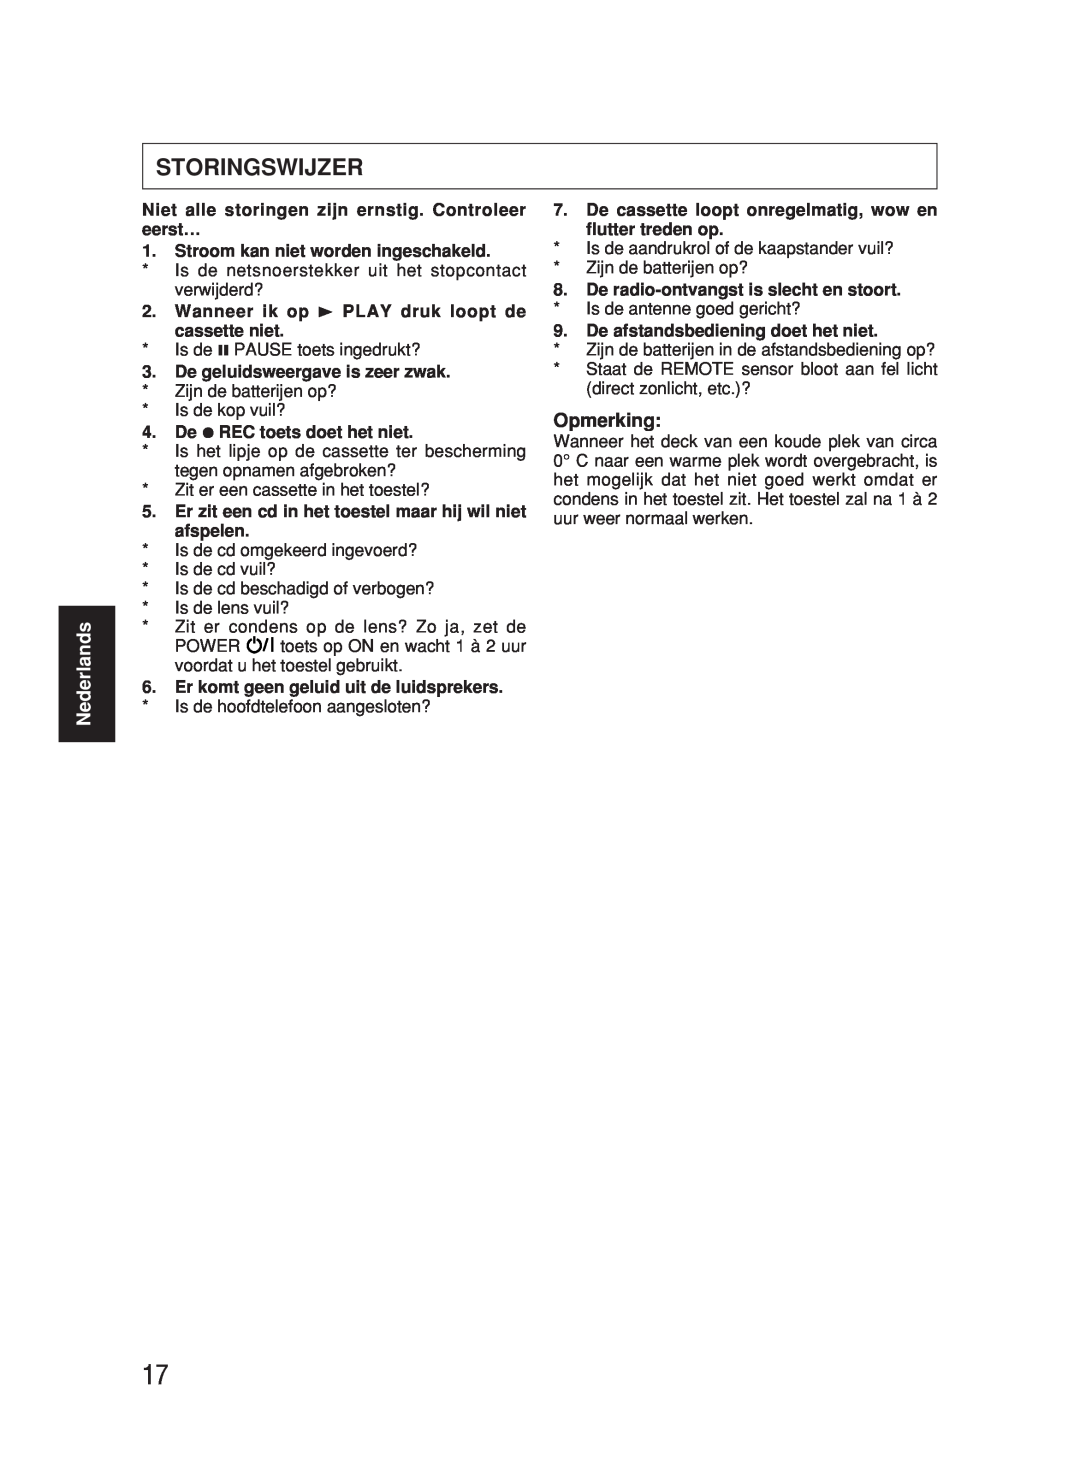 JVC RC-BX530SL manual Storingswijzer, Nederlands, Opmerking 